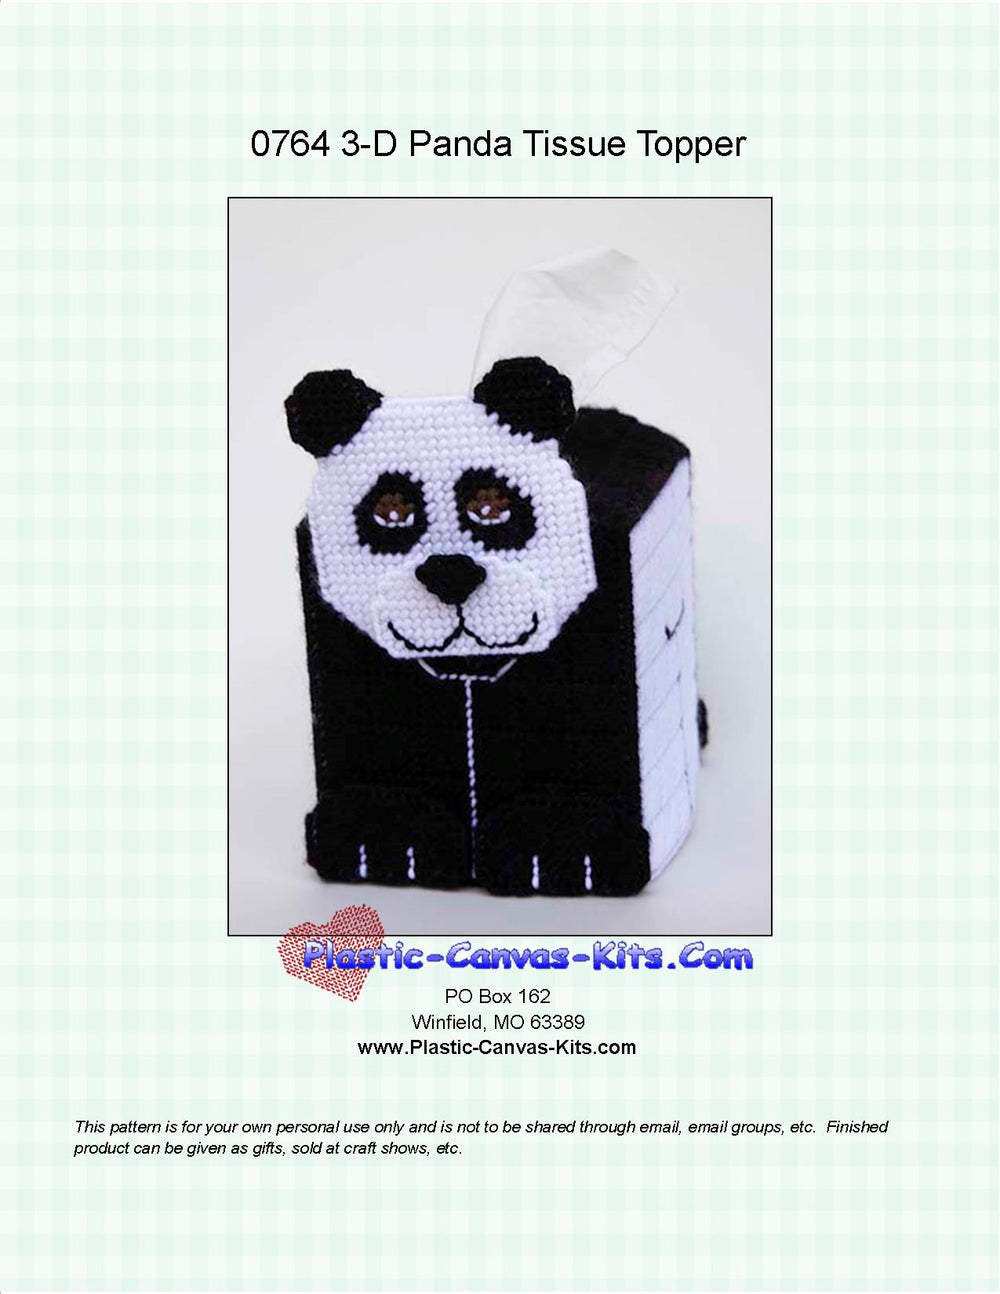 Panda 3-D Tissue Topper